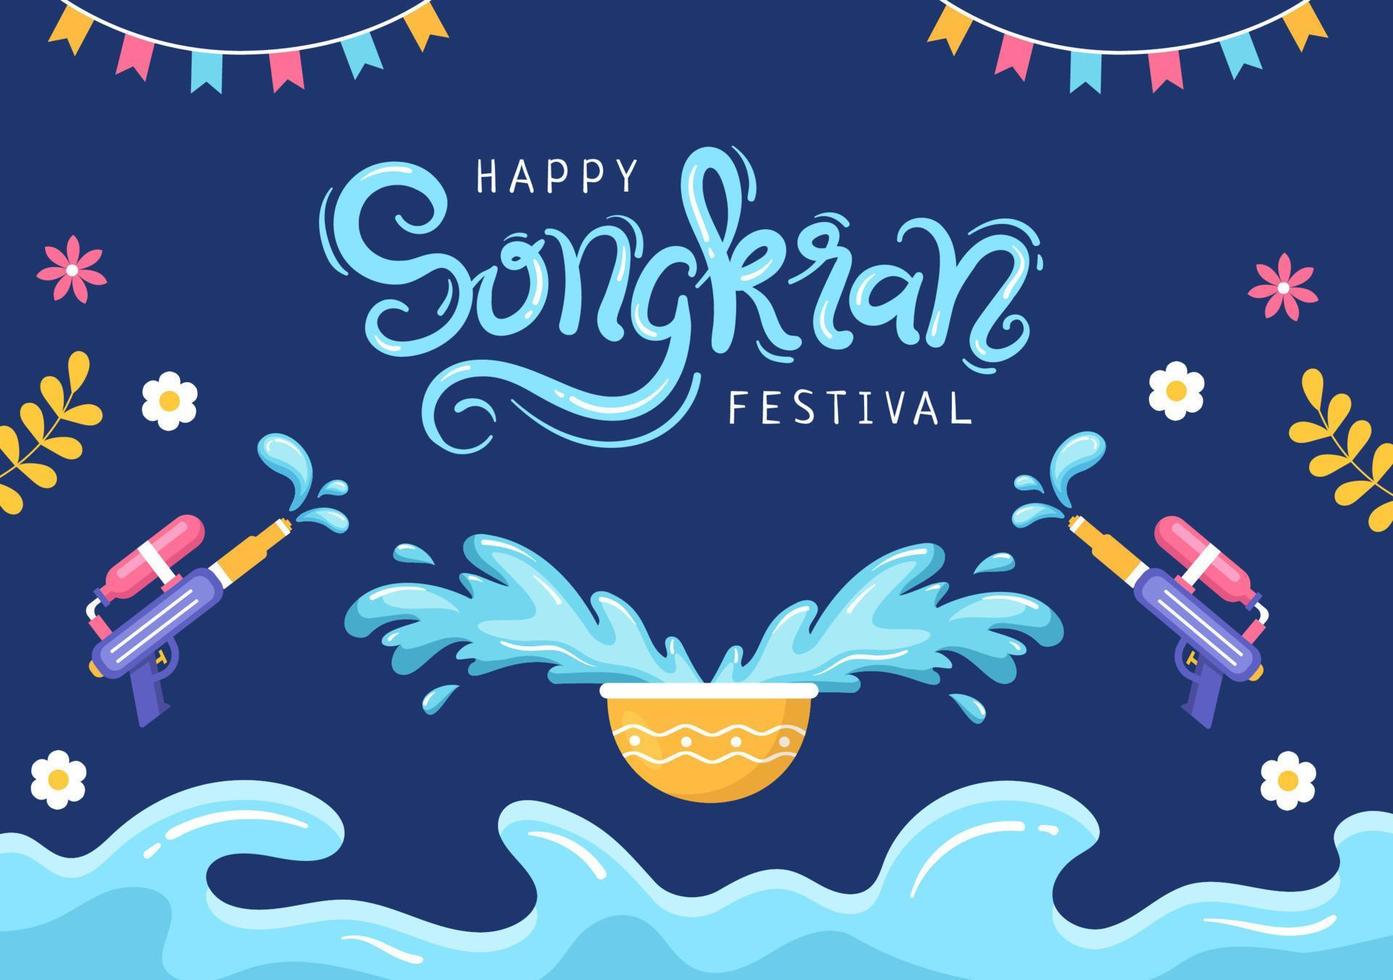 feliz día del festival songkran dibujado a mano ilustración de dibujos animados jugando pistola de agua en celebración de tailandia en diseño de fondo de estilo plano vector